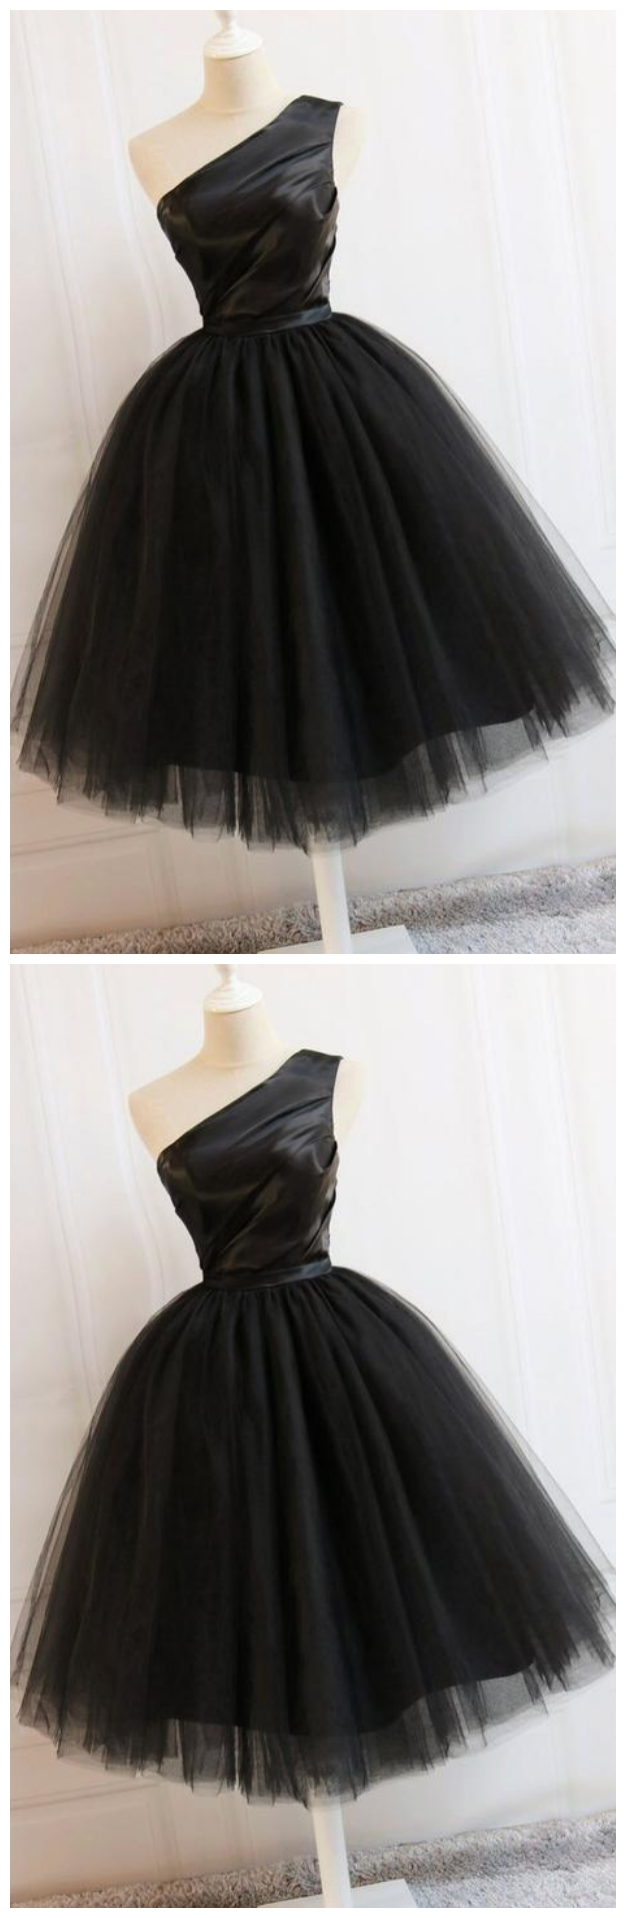 Black One Shoulder A Line Homecoming Dresses Short Prom Dresses